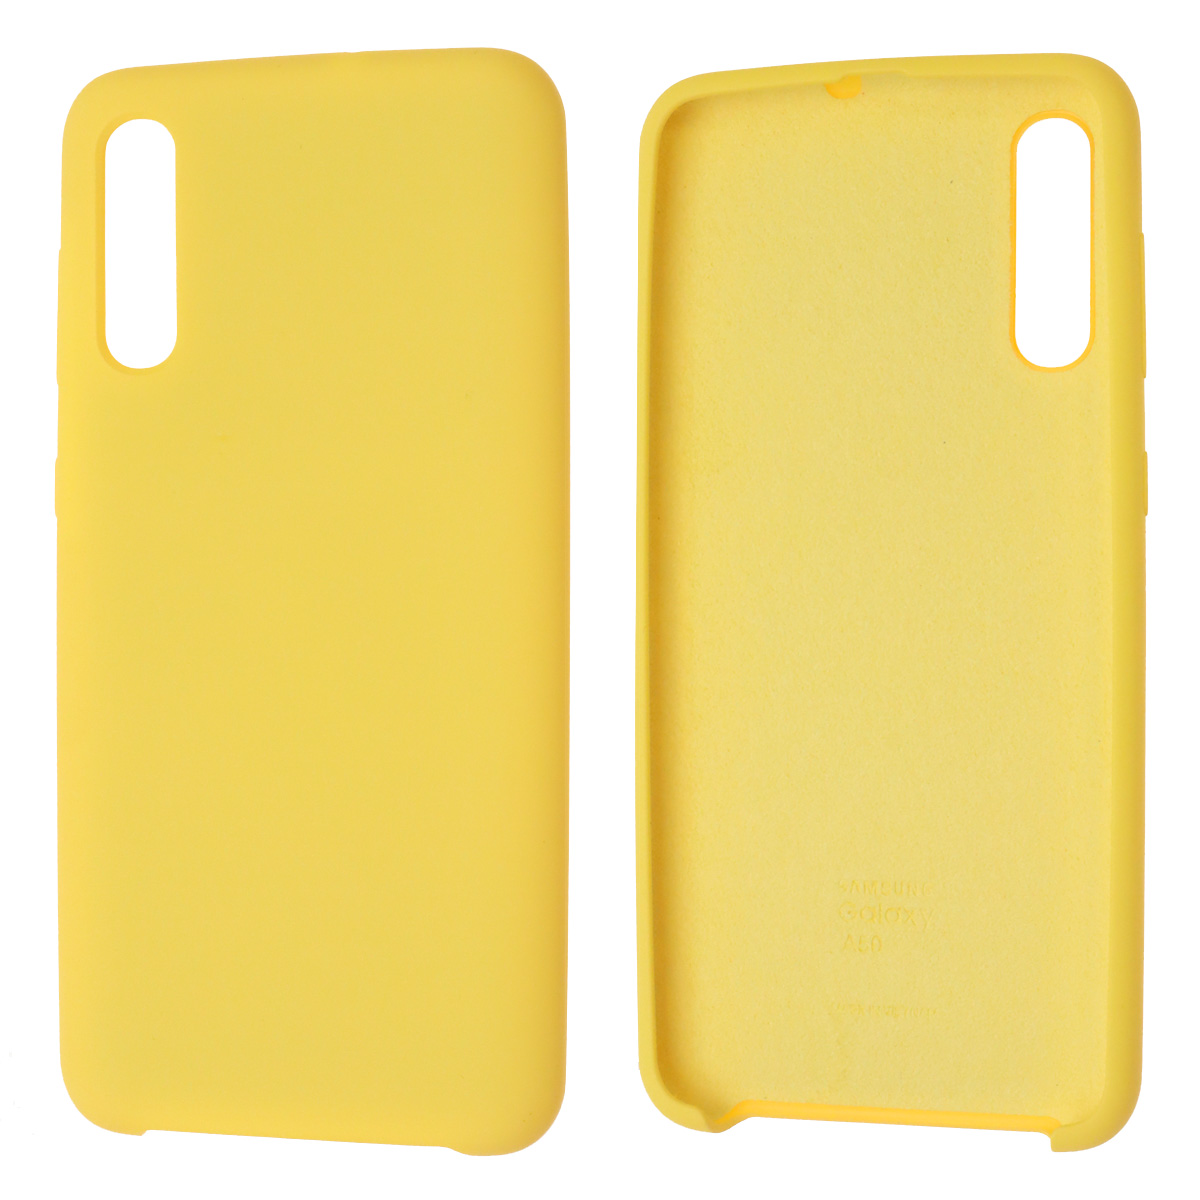 Чехол накладка Silicon Cover для SAMSUNG Galaxy A50 (SM-A505), A30s (SM-A307), A50s (SM-A507), силикон, бархат, цвет желтый